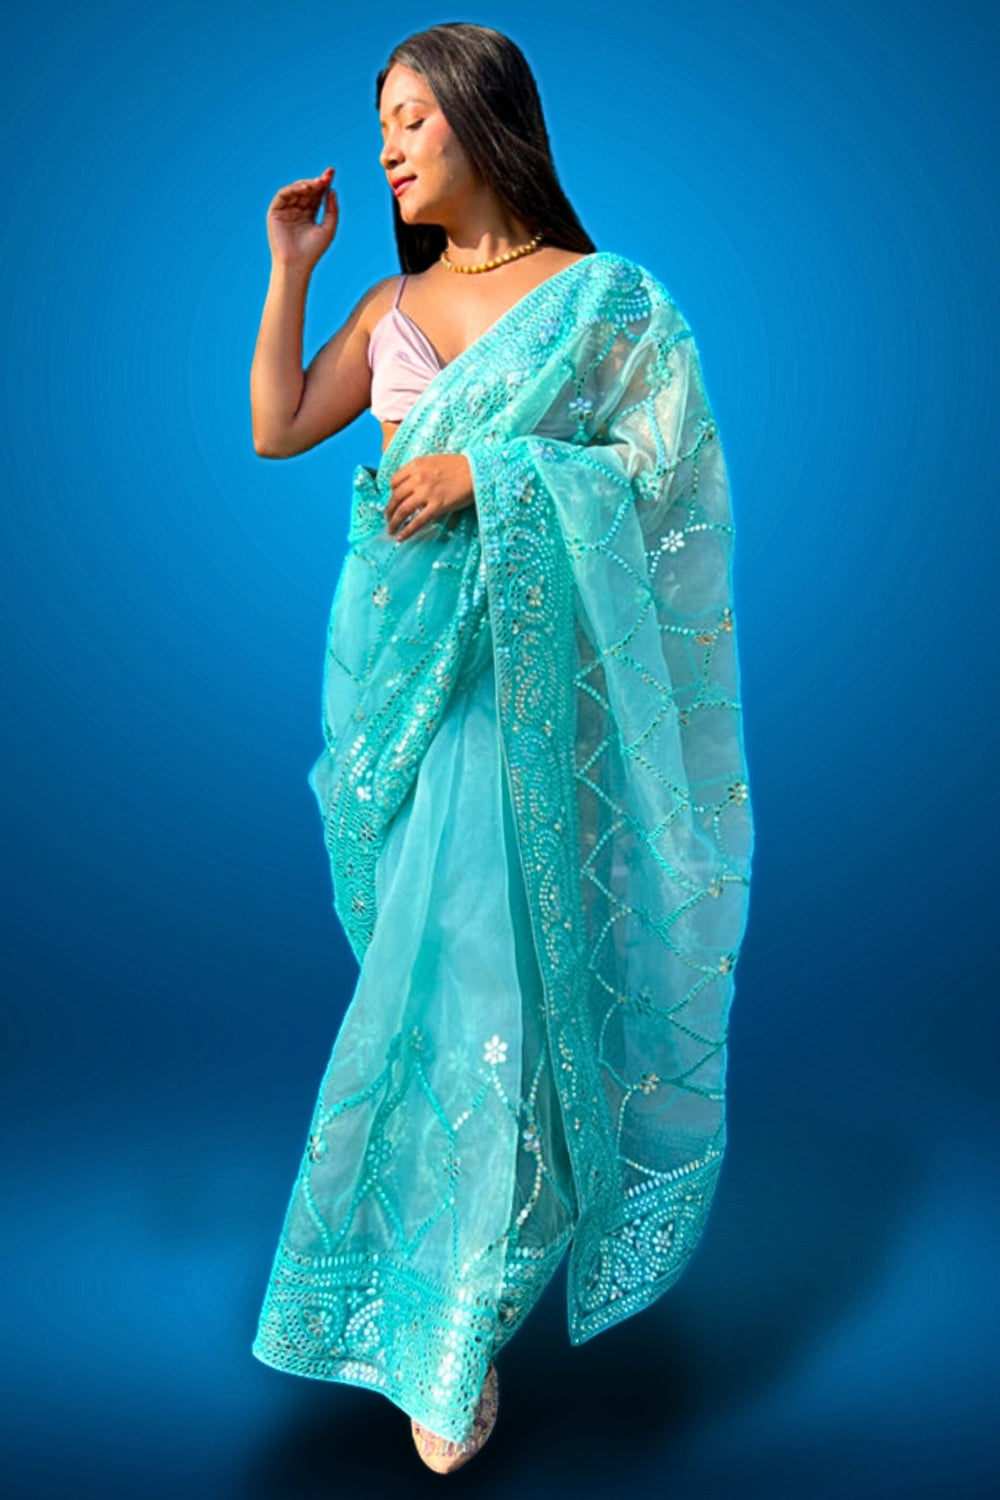 mirror organza saree - organza sarees with mirror work - real mirror work saree